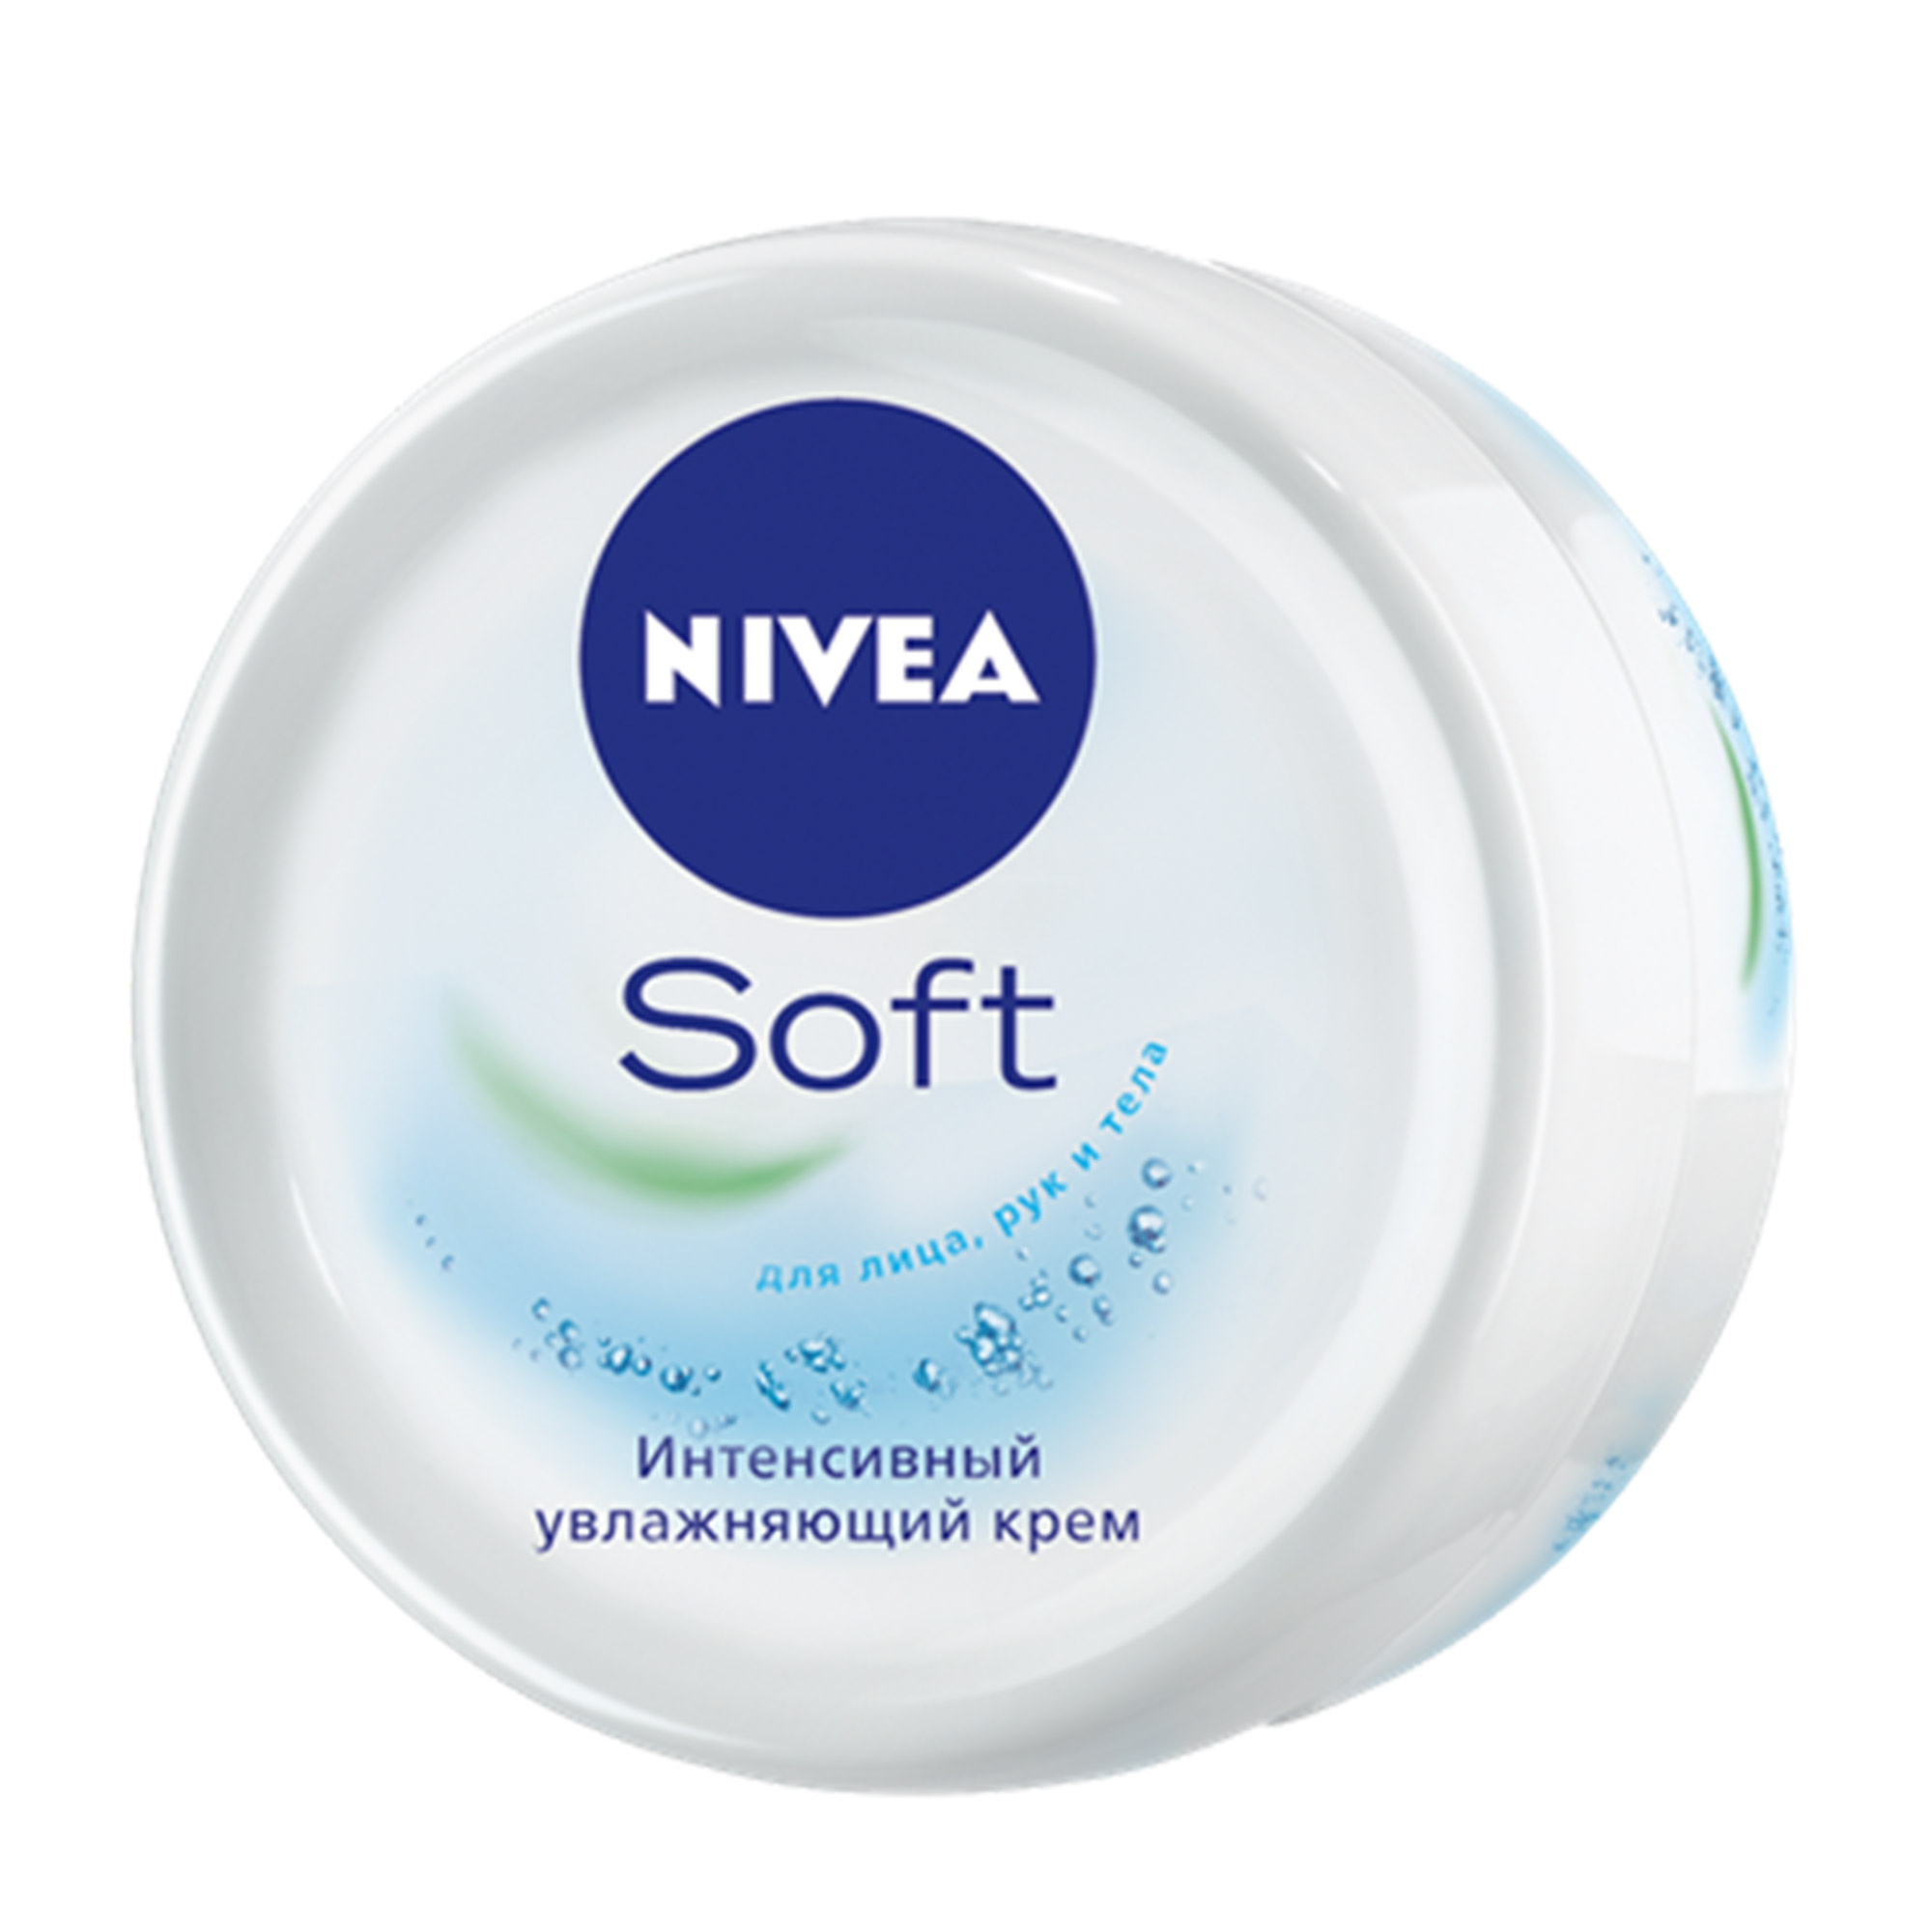 Крем интенсивный увлажняющий Soft 200 мл Nivea крем для ухода за кожей nivea soft интенсивный увлажняющий 75 мл